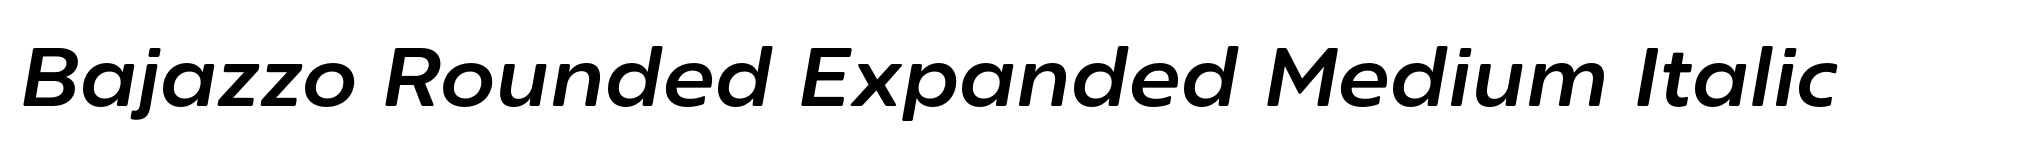 Bajazzo Rounded Expanded Medium Italic image